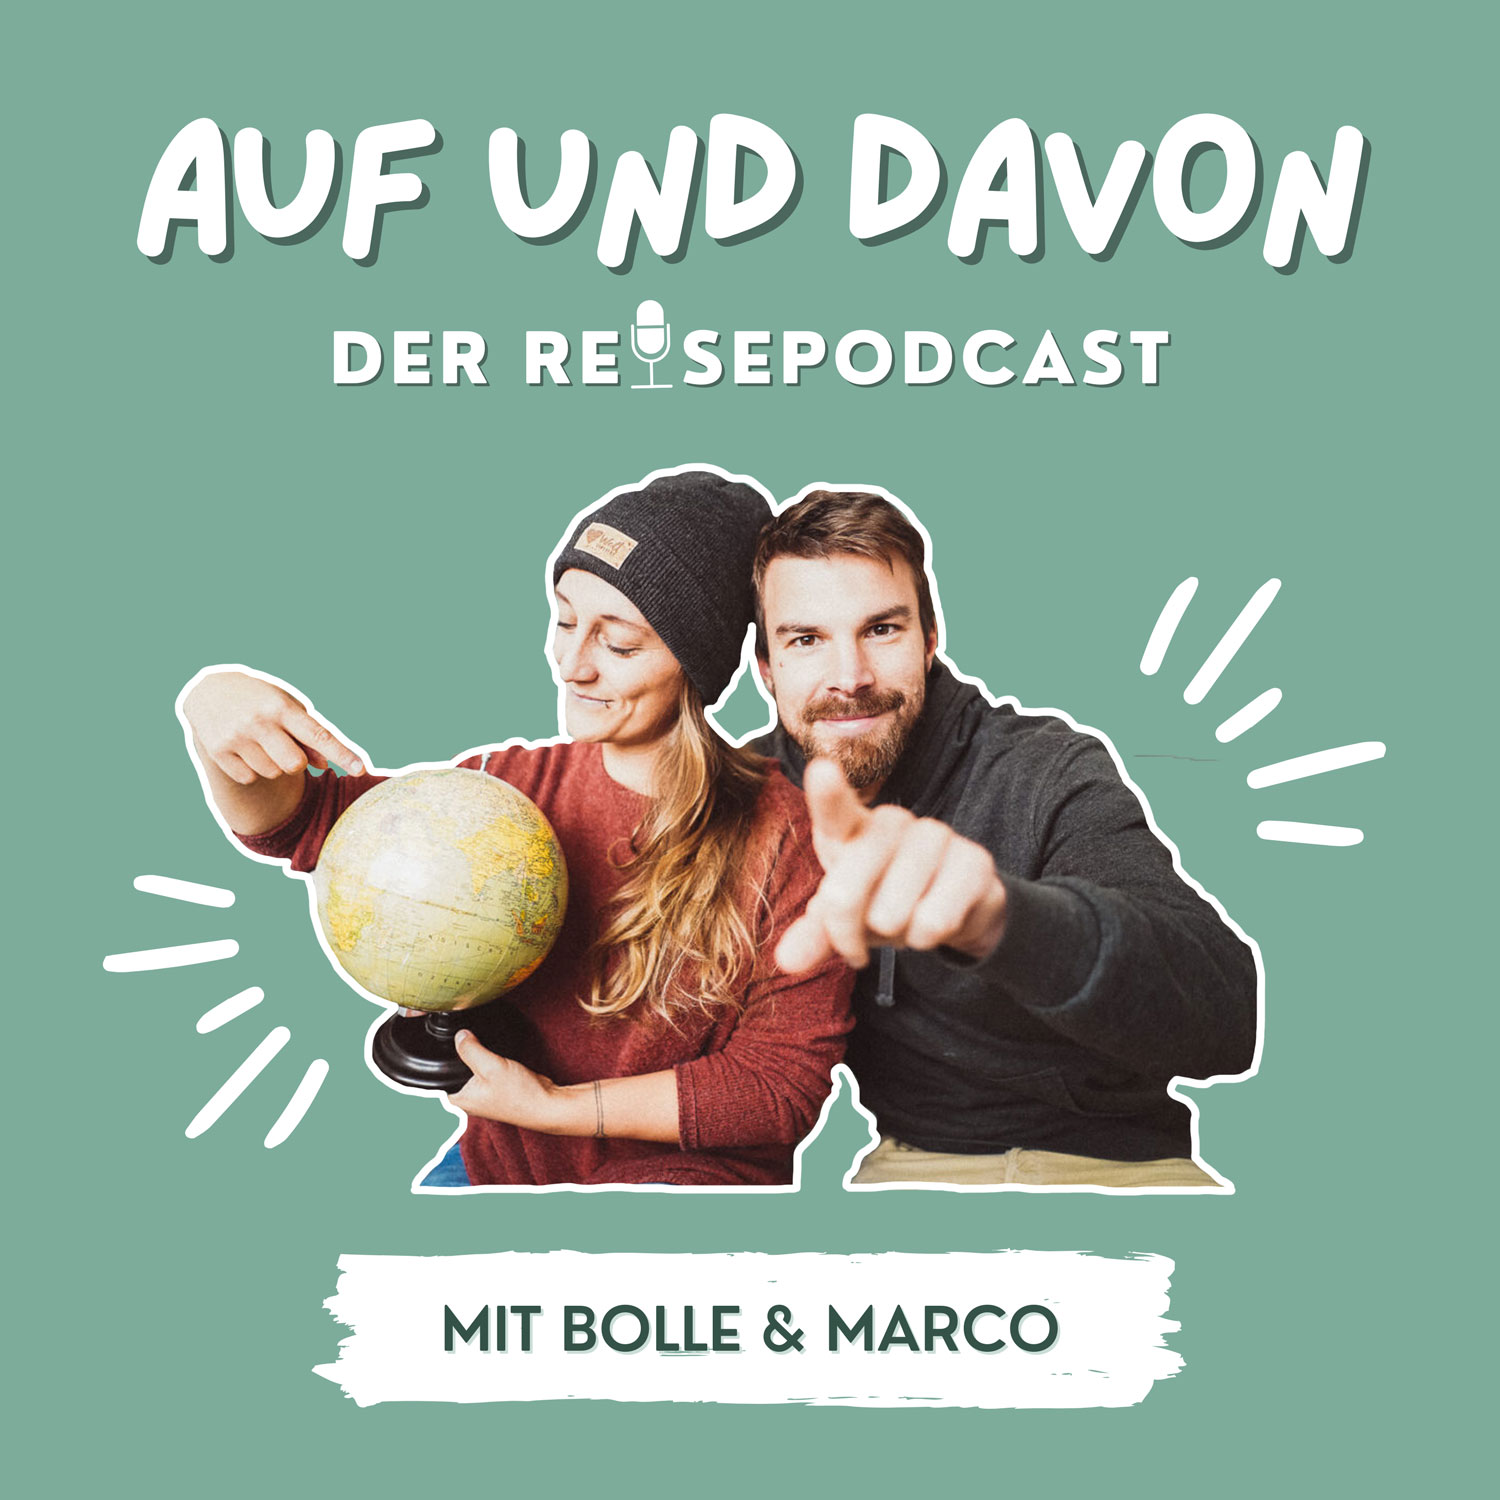 AUF UND DAVON - Der Reisepodcast mit Bolle & Marco